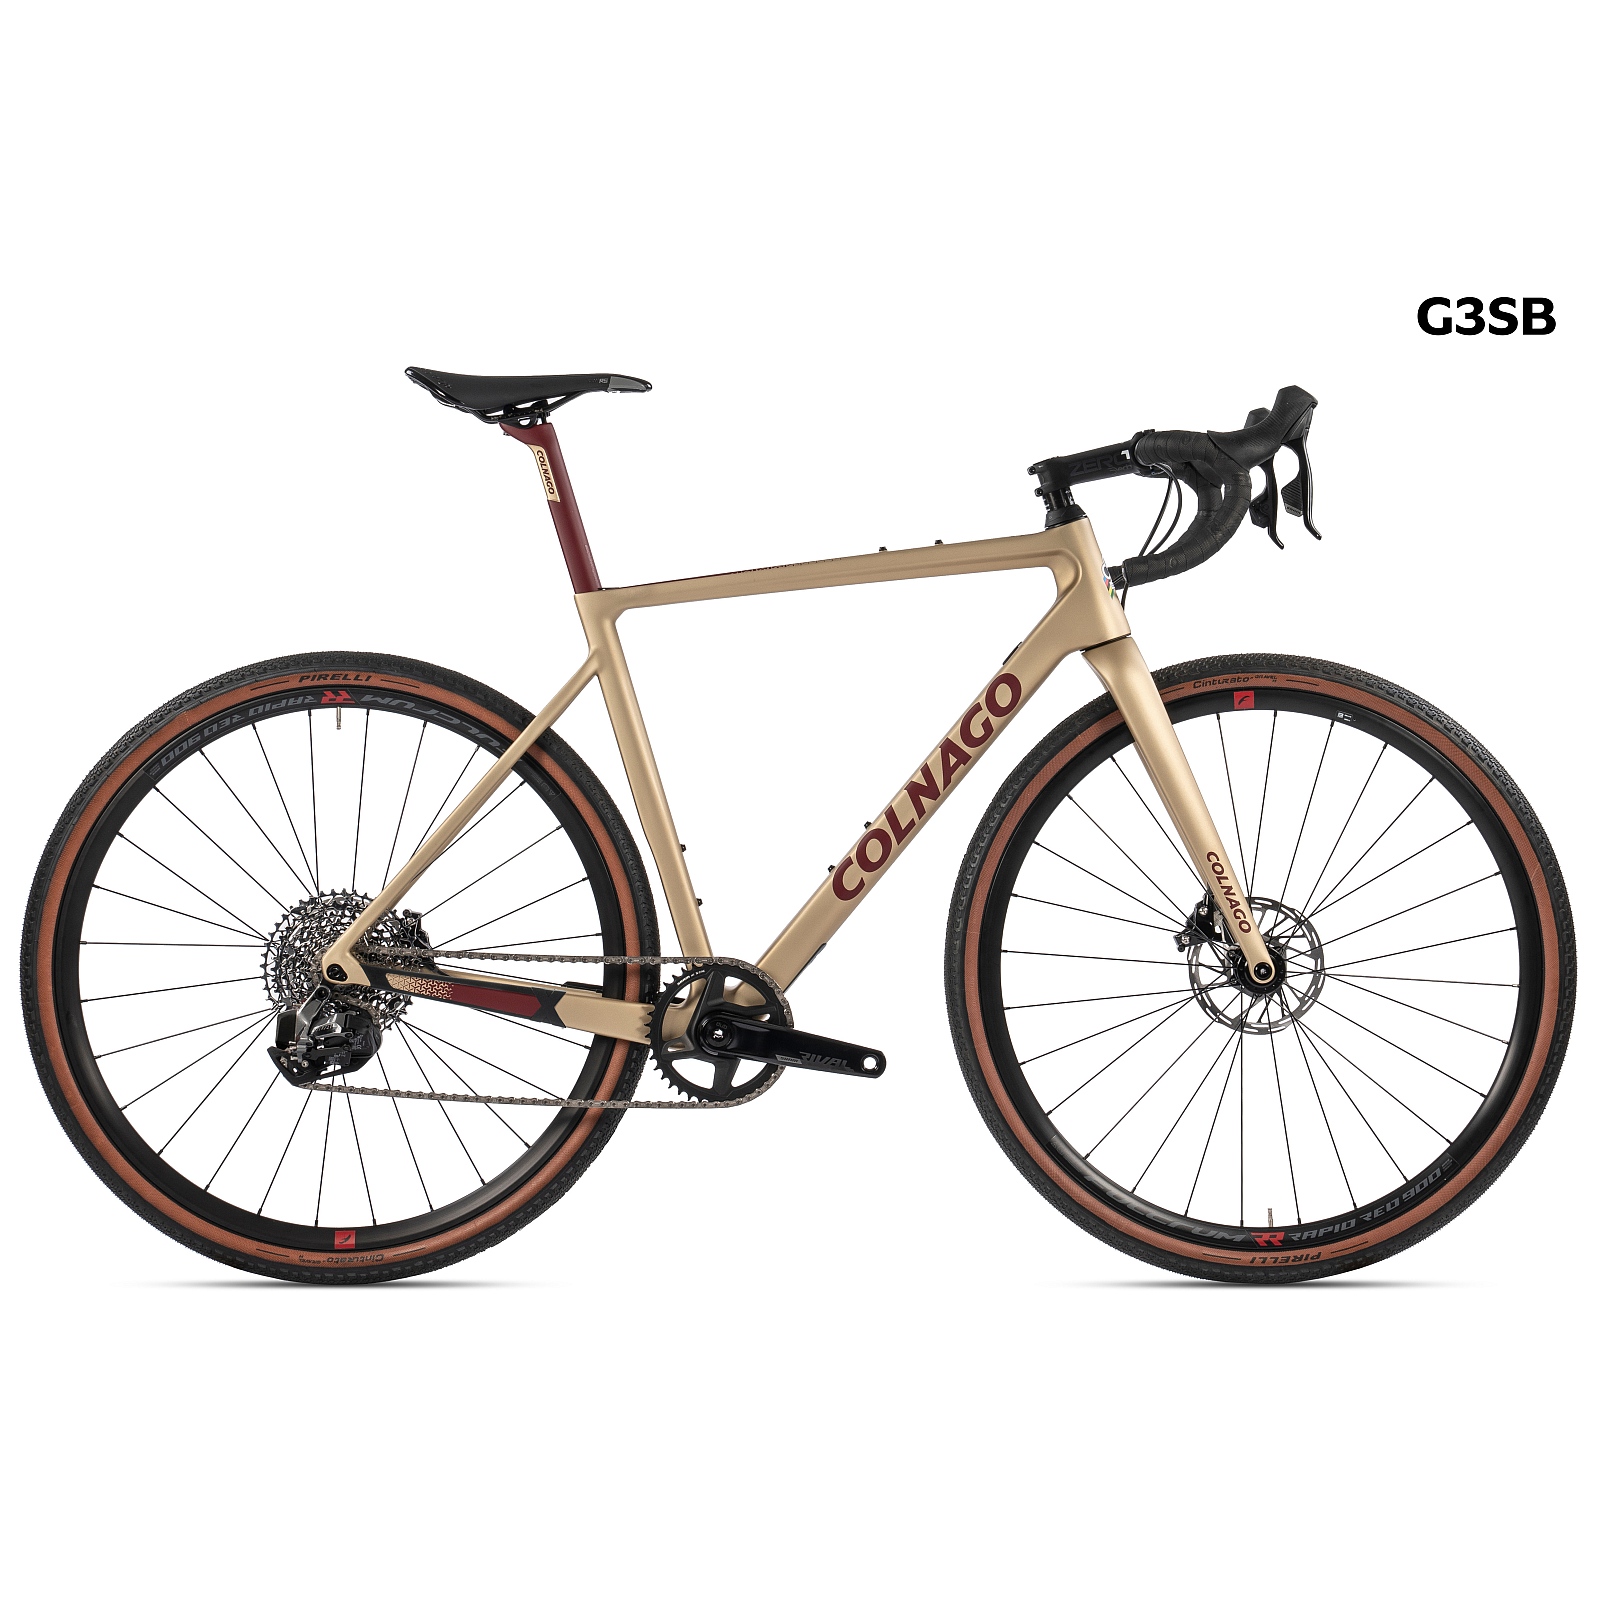 Productfoto van Colnago G3-X DISC - Rival AXS - Carbon Gravel Bike - G3SB